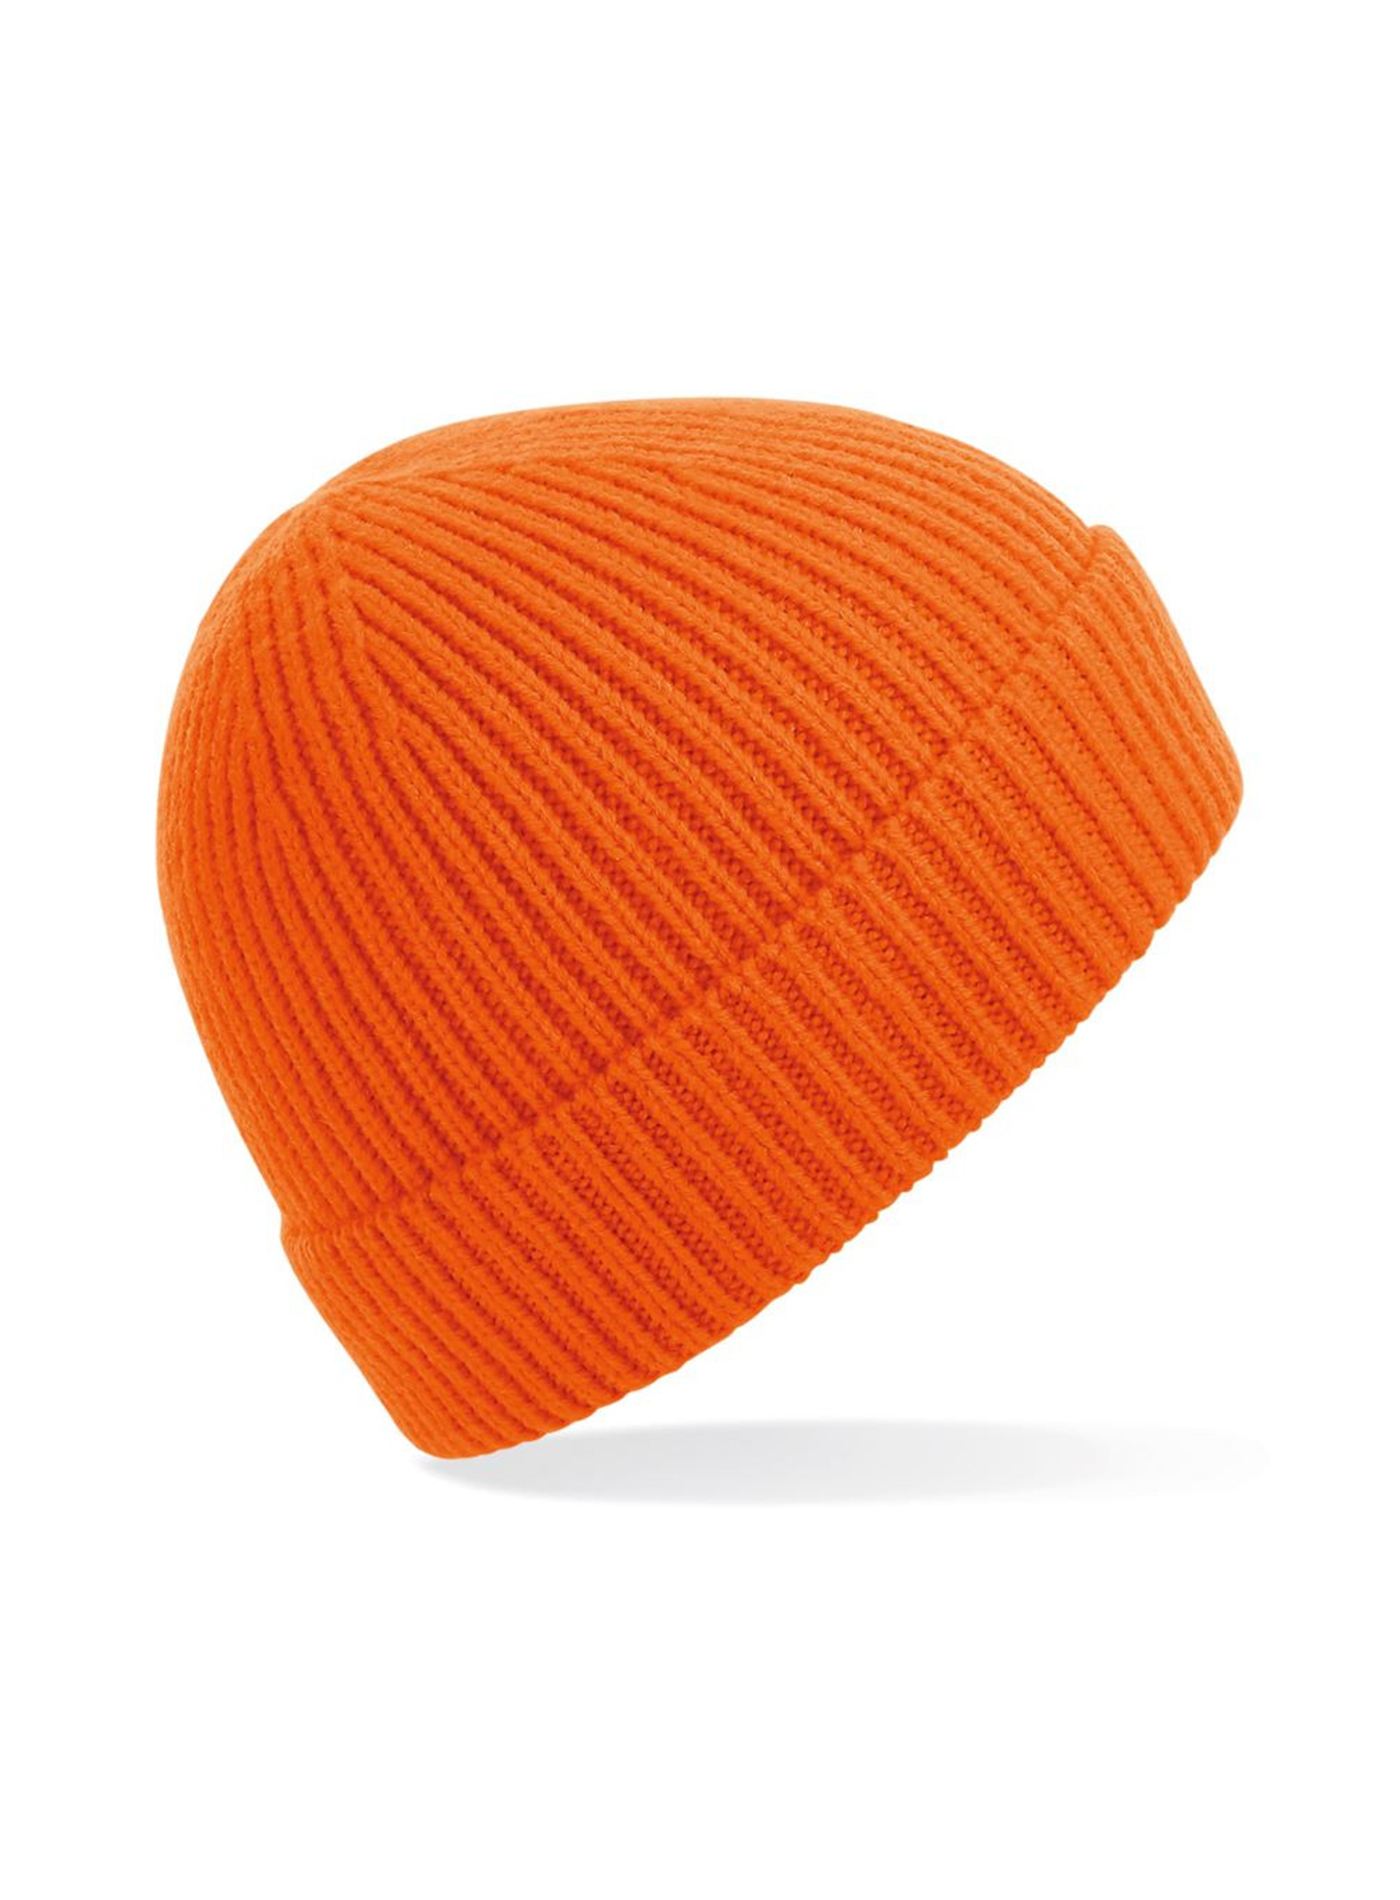 Čepice Beechfield Rib knit - Oranžová univerzal